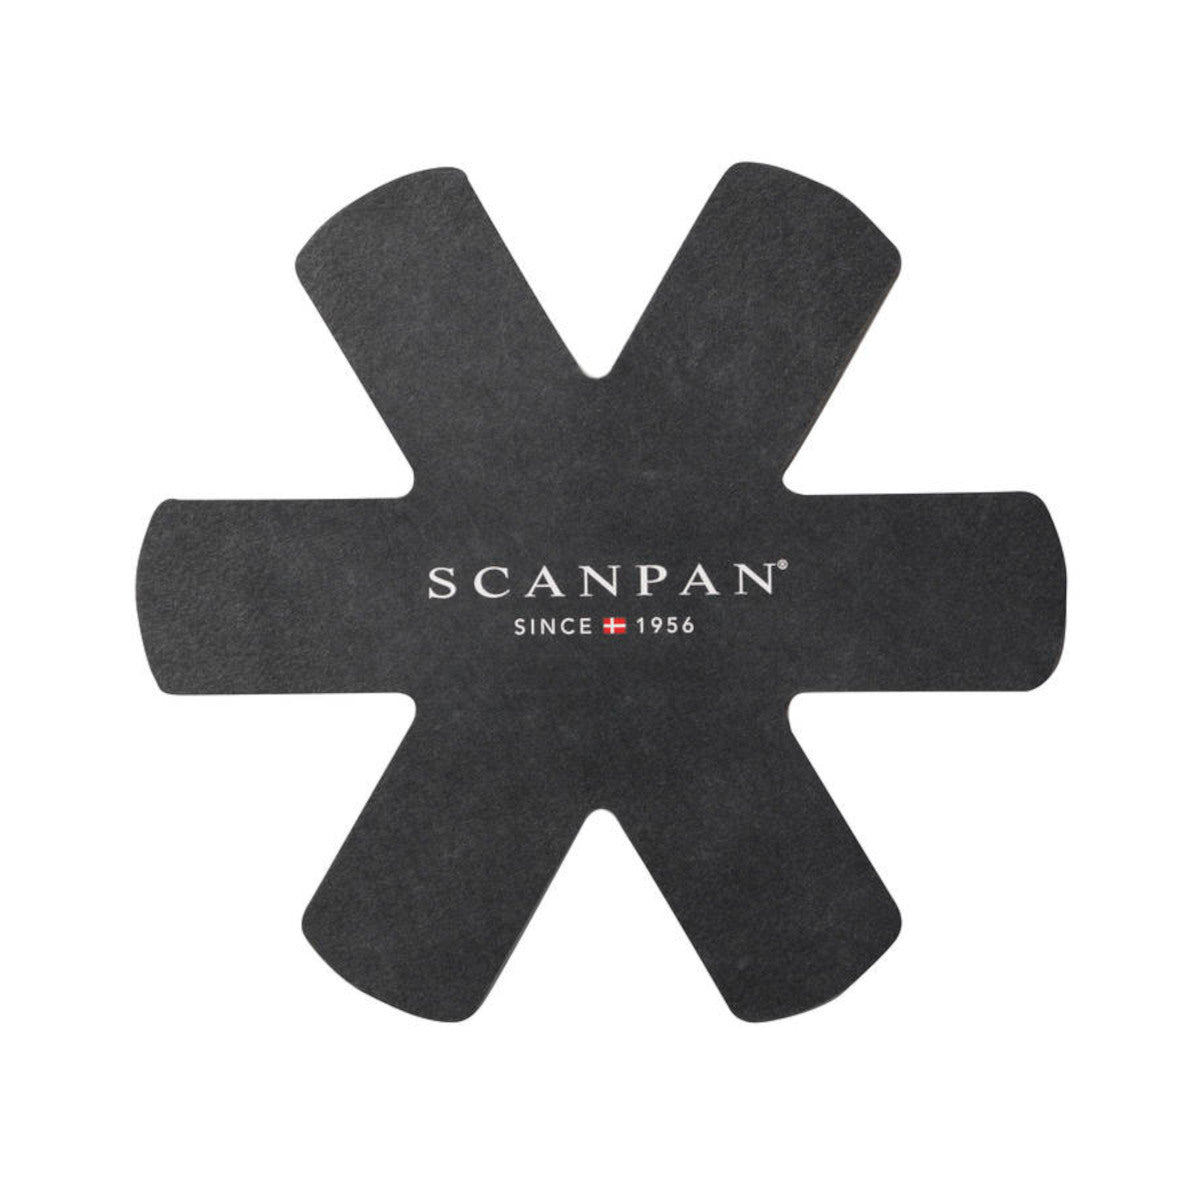 Scanpan Pot Protectors Set of 3 | Minimax